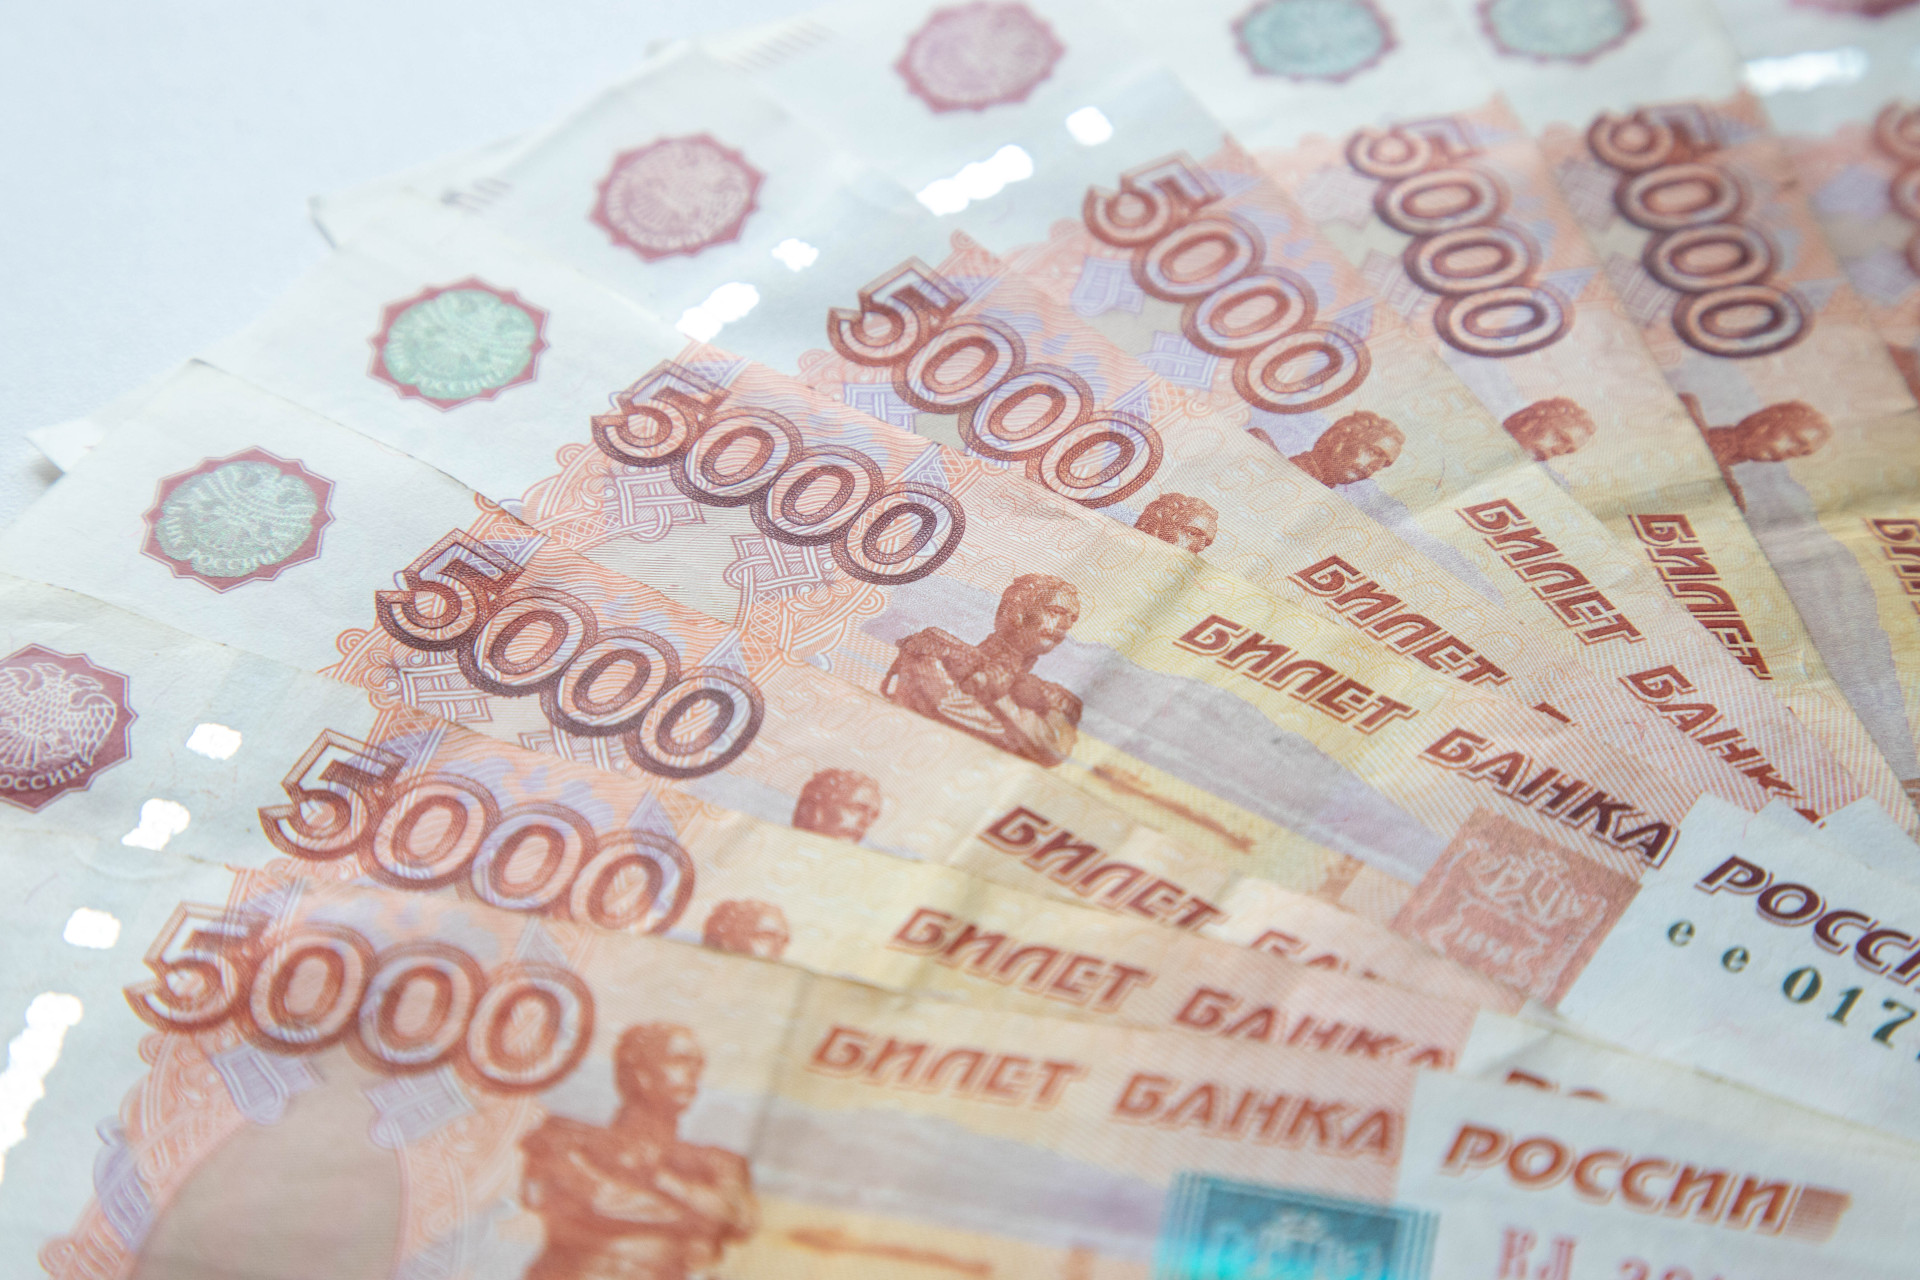 За минувшие выходные жители Тульской области отдали мошенникам 6,5 млн рублей